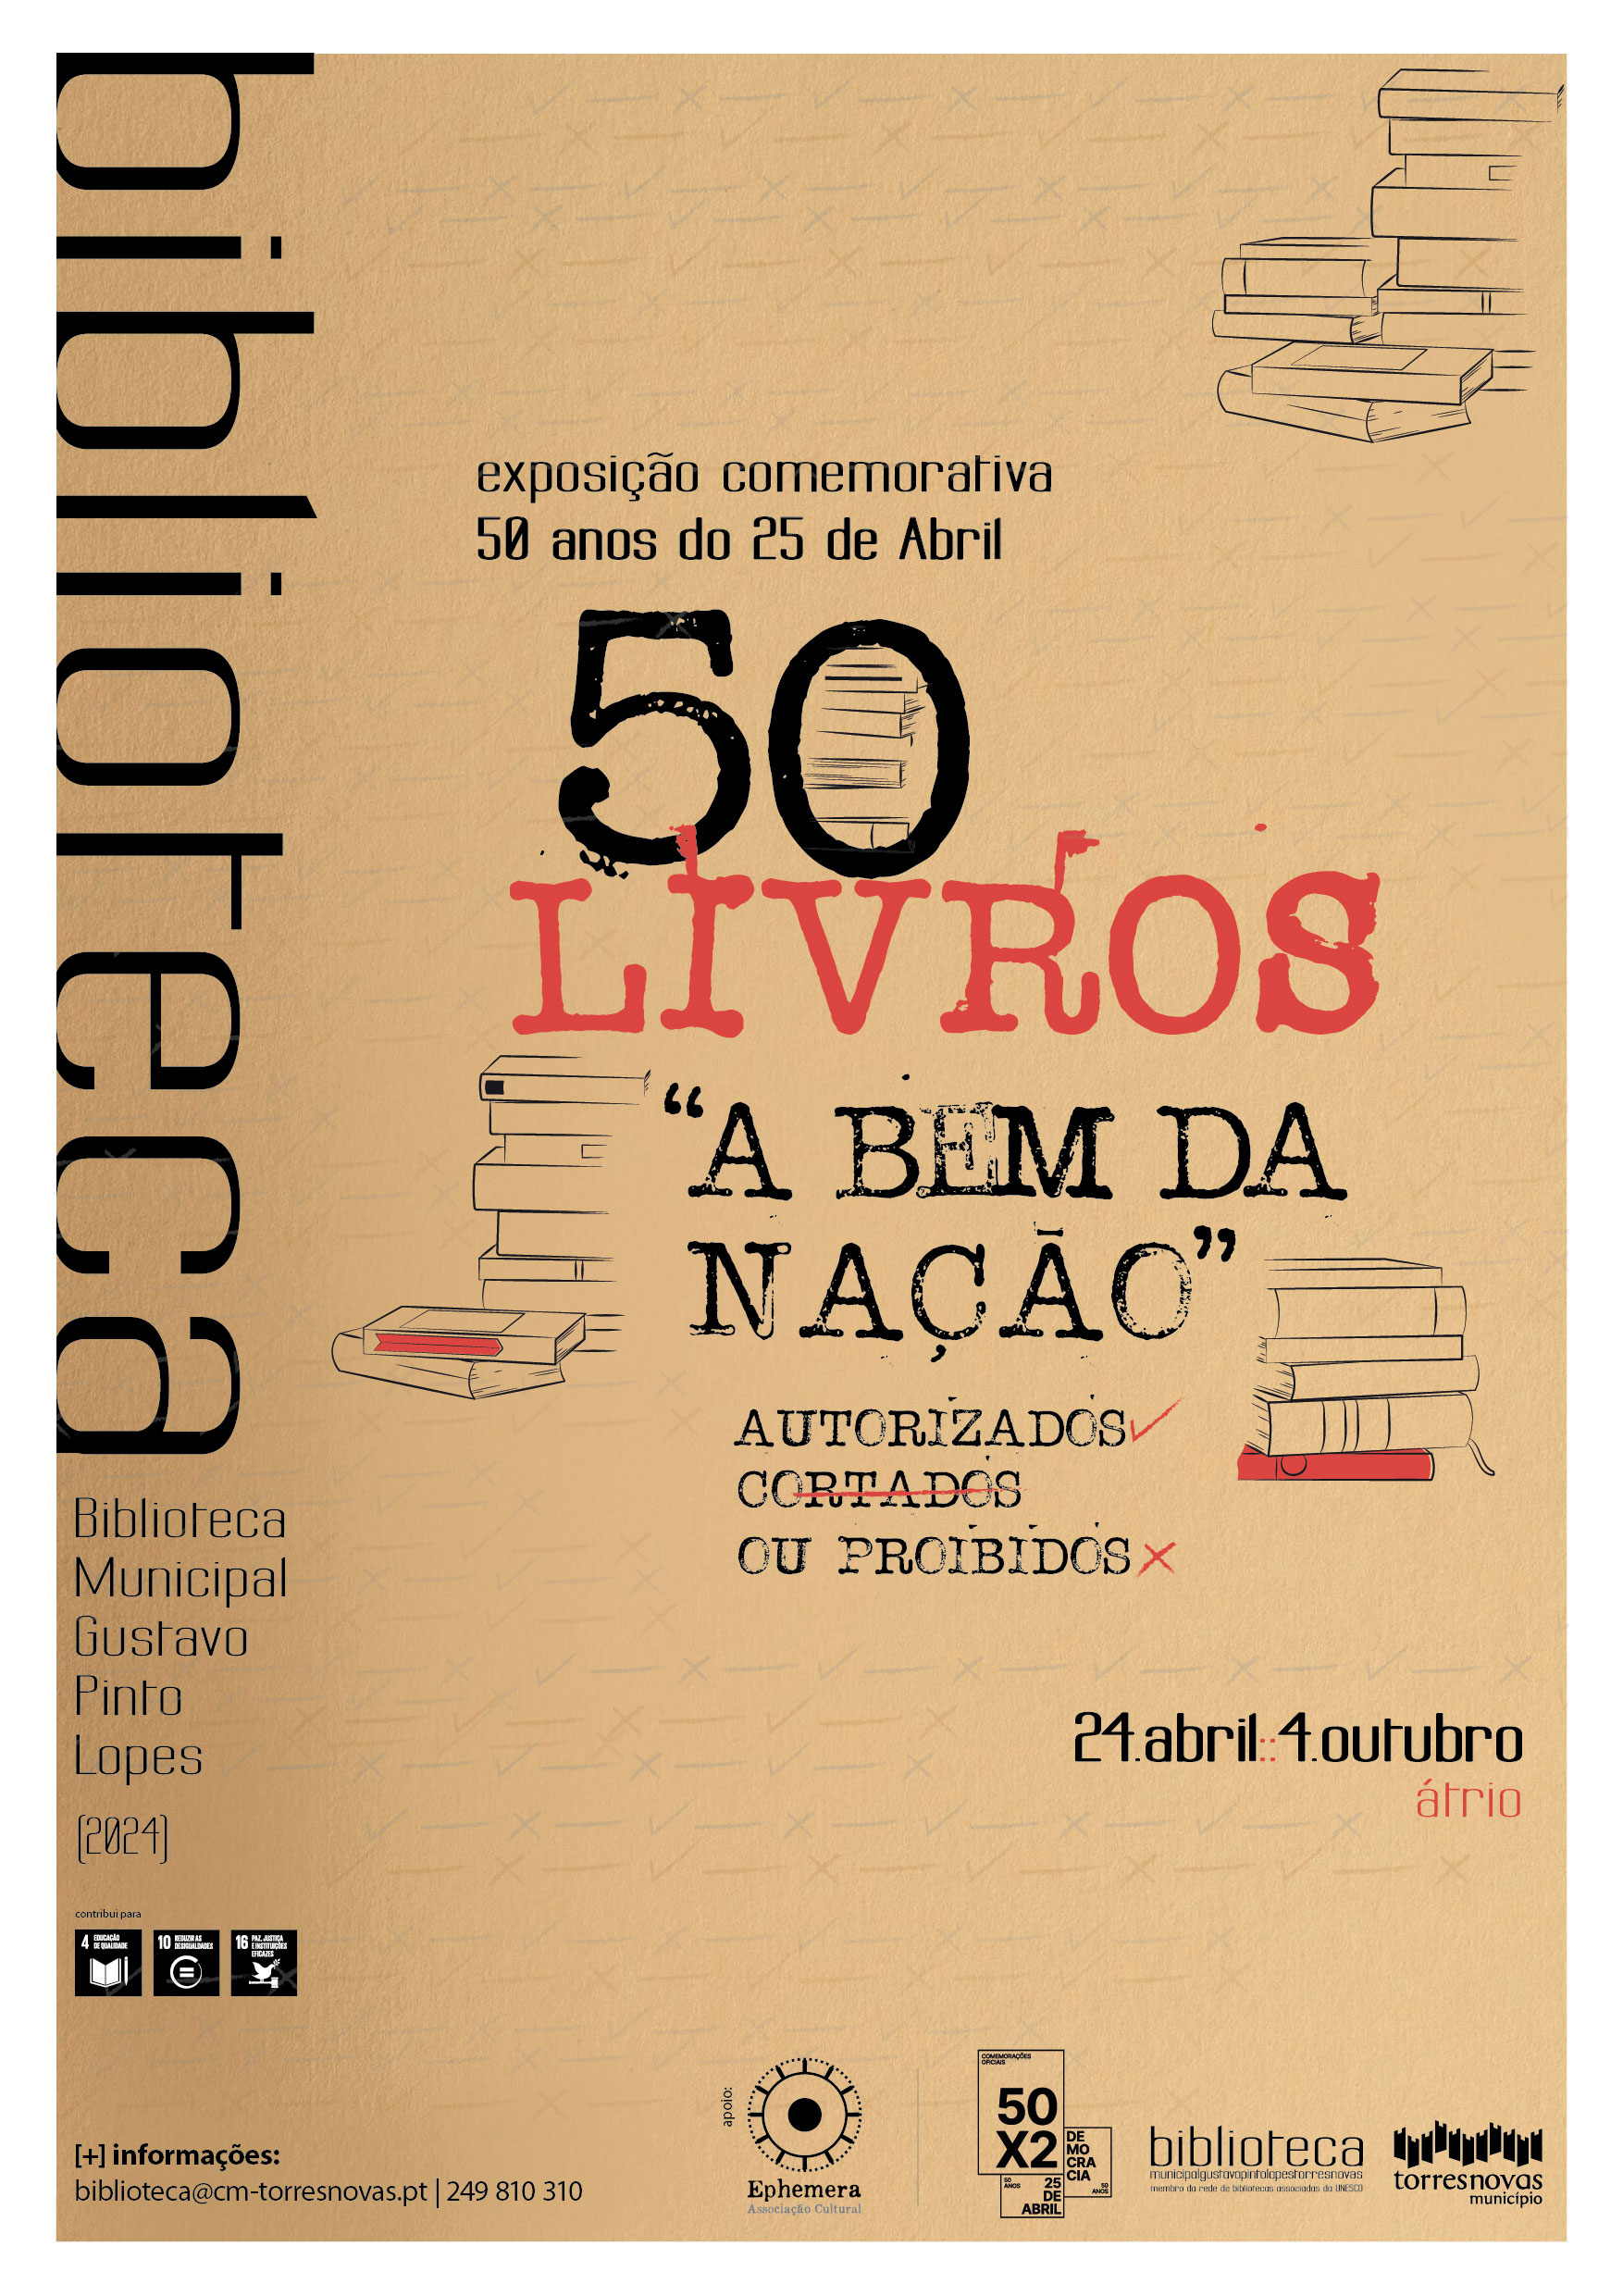 Capa Oficial do Evento Exposição // 50 livros “a bem da nação” autorizados, cortados ou proibidos 